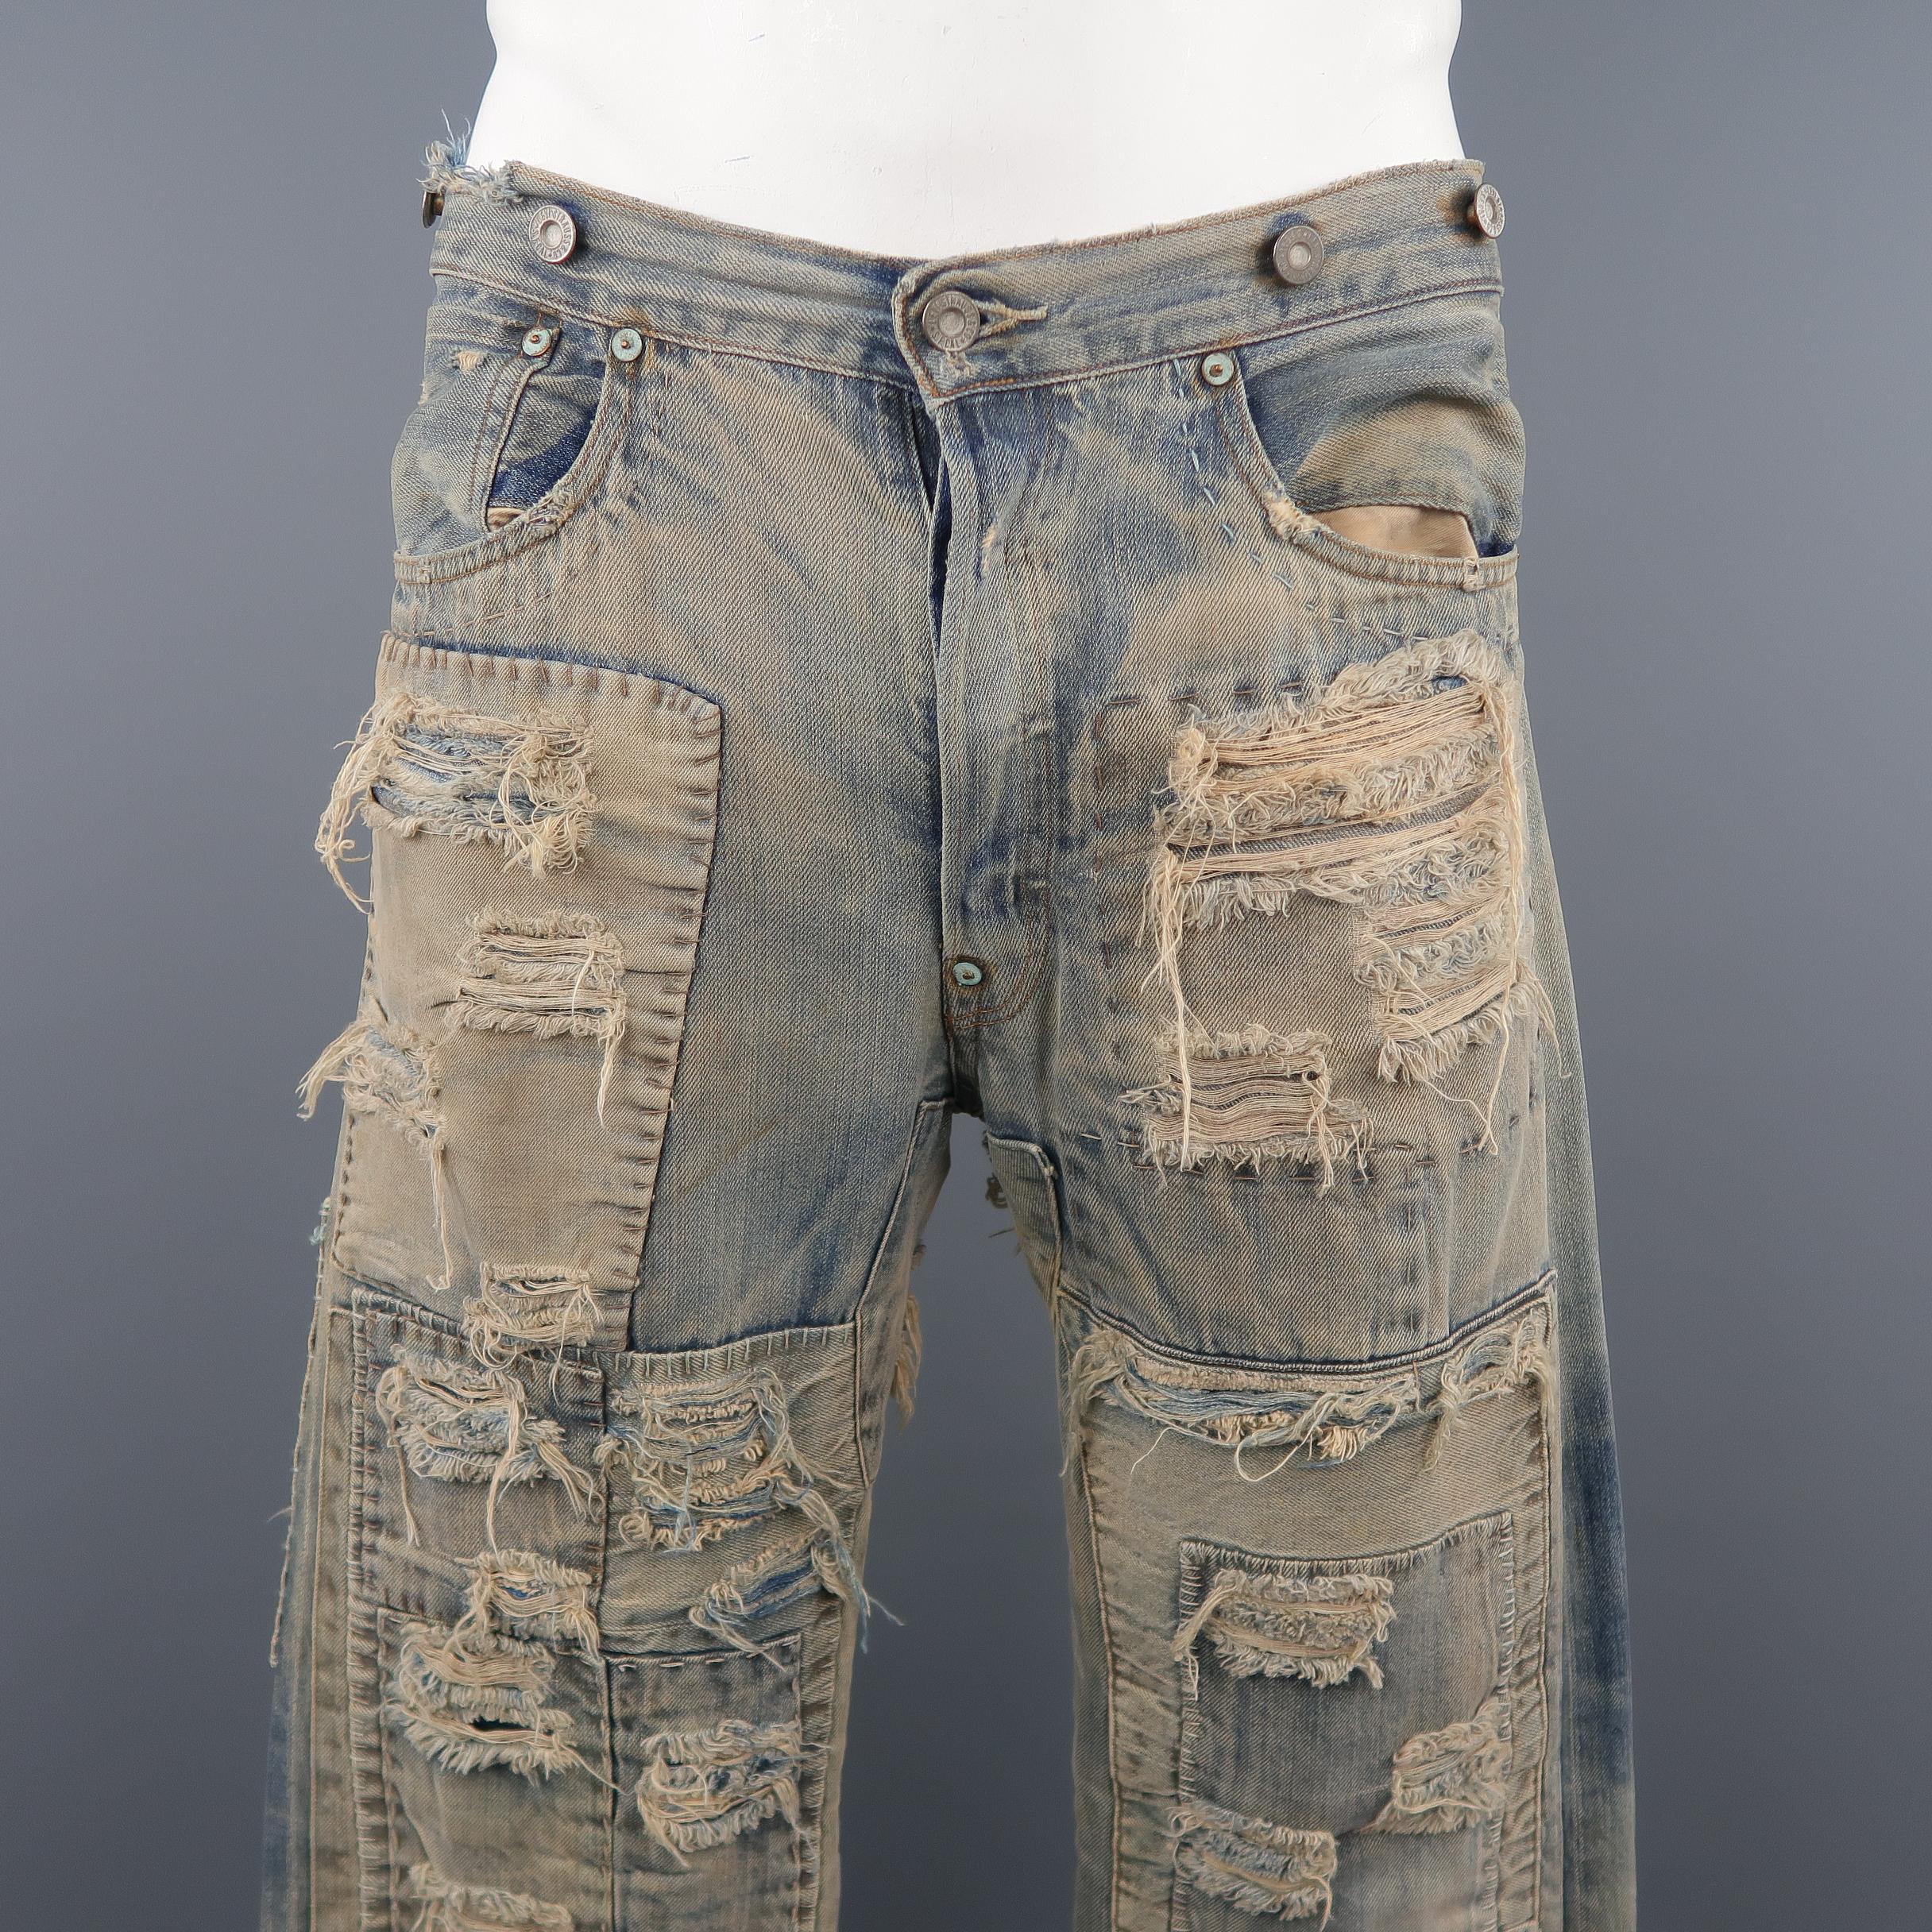 Die LEVI' S VINTAGE Jeans ist aus leicht schmutzig gewaschenem Denim mit allover Patchwork und Destroyed-Details. Riss im Rücken. So wie es ist. Hergestellt in den USA. 
 
Guter gebrauchter Zustand. 
Markiert: (keine Größe)
 
Maße: 
 
Taille: 34